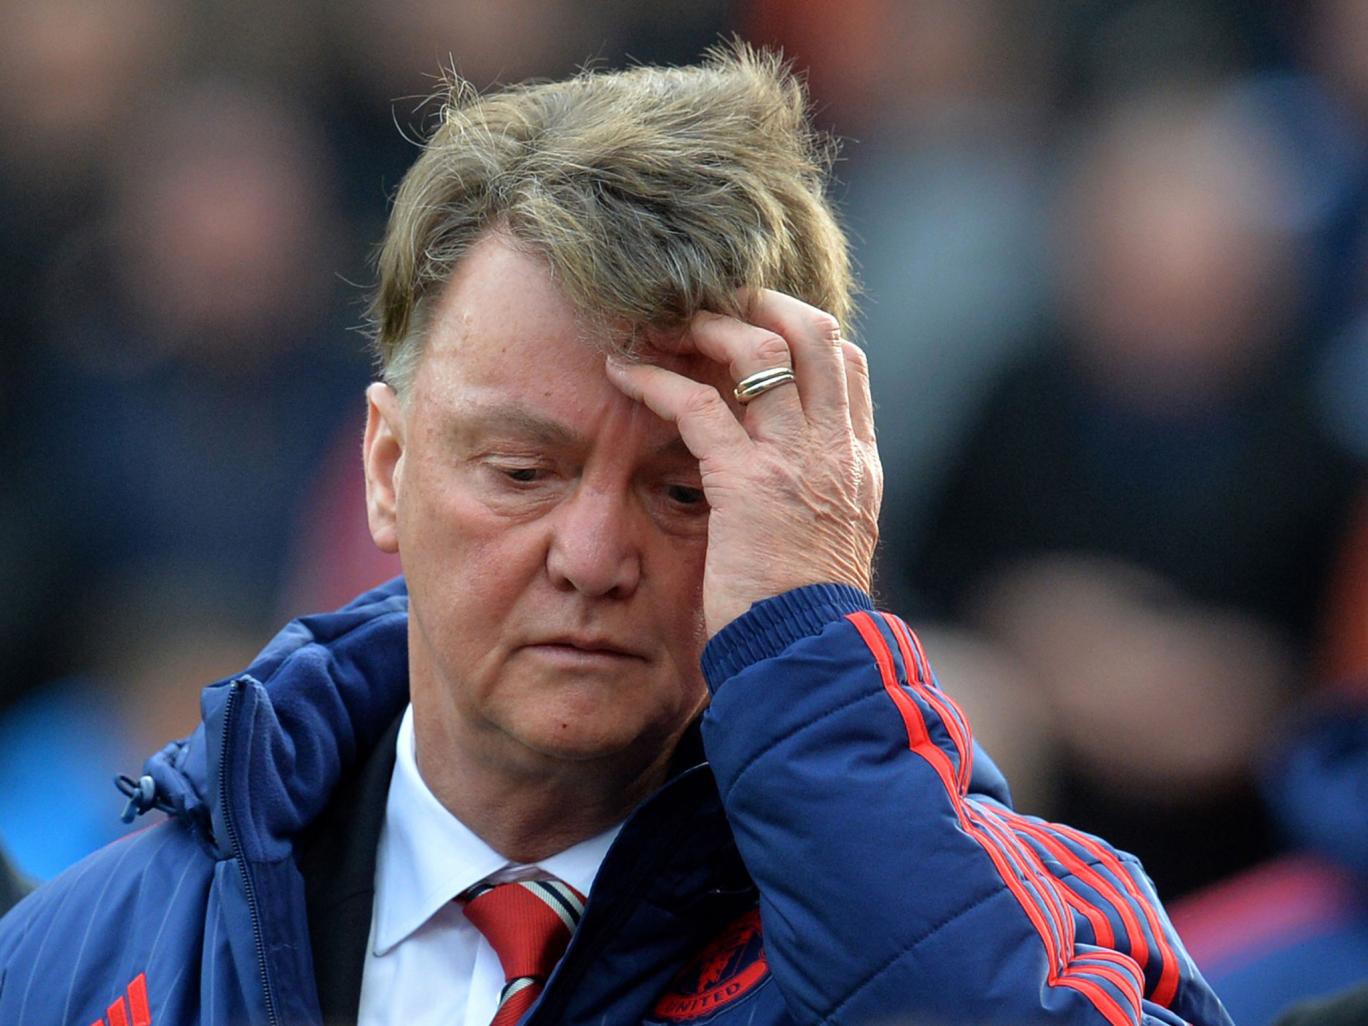 Sa thải HLV Van Gaal, Man Utd chỉ đền bù 66% mức lương